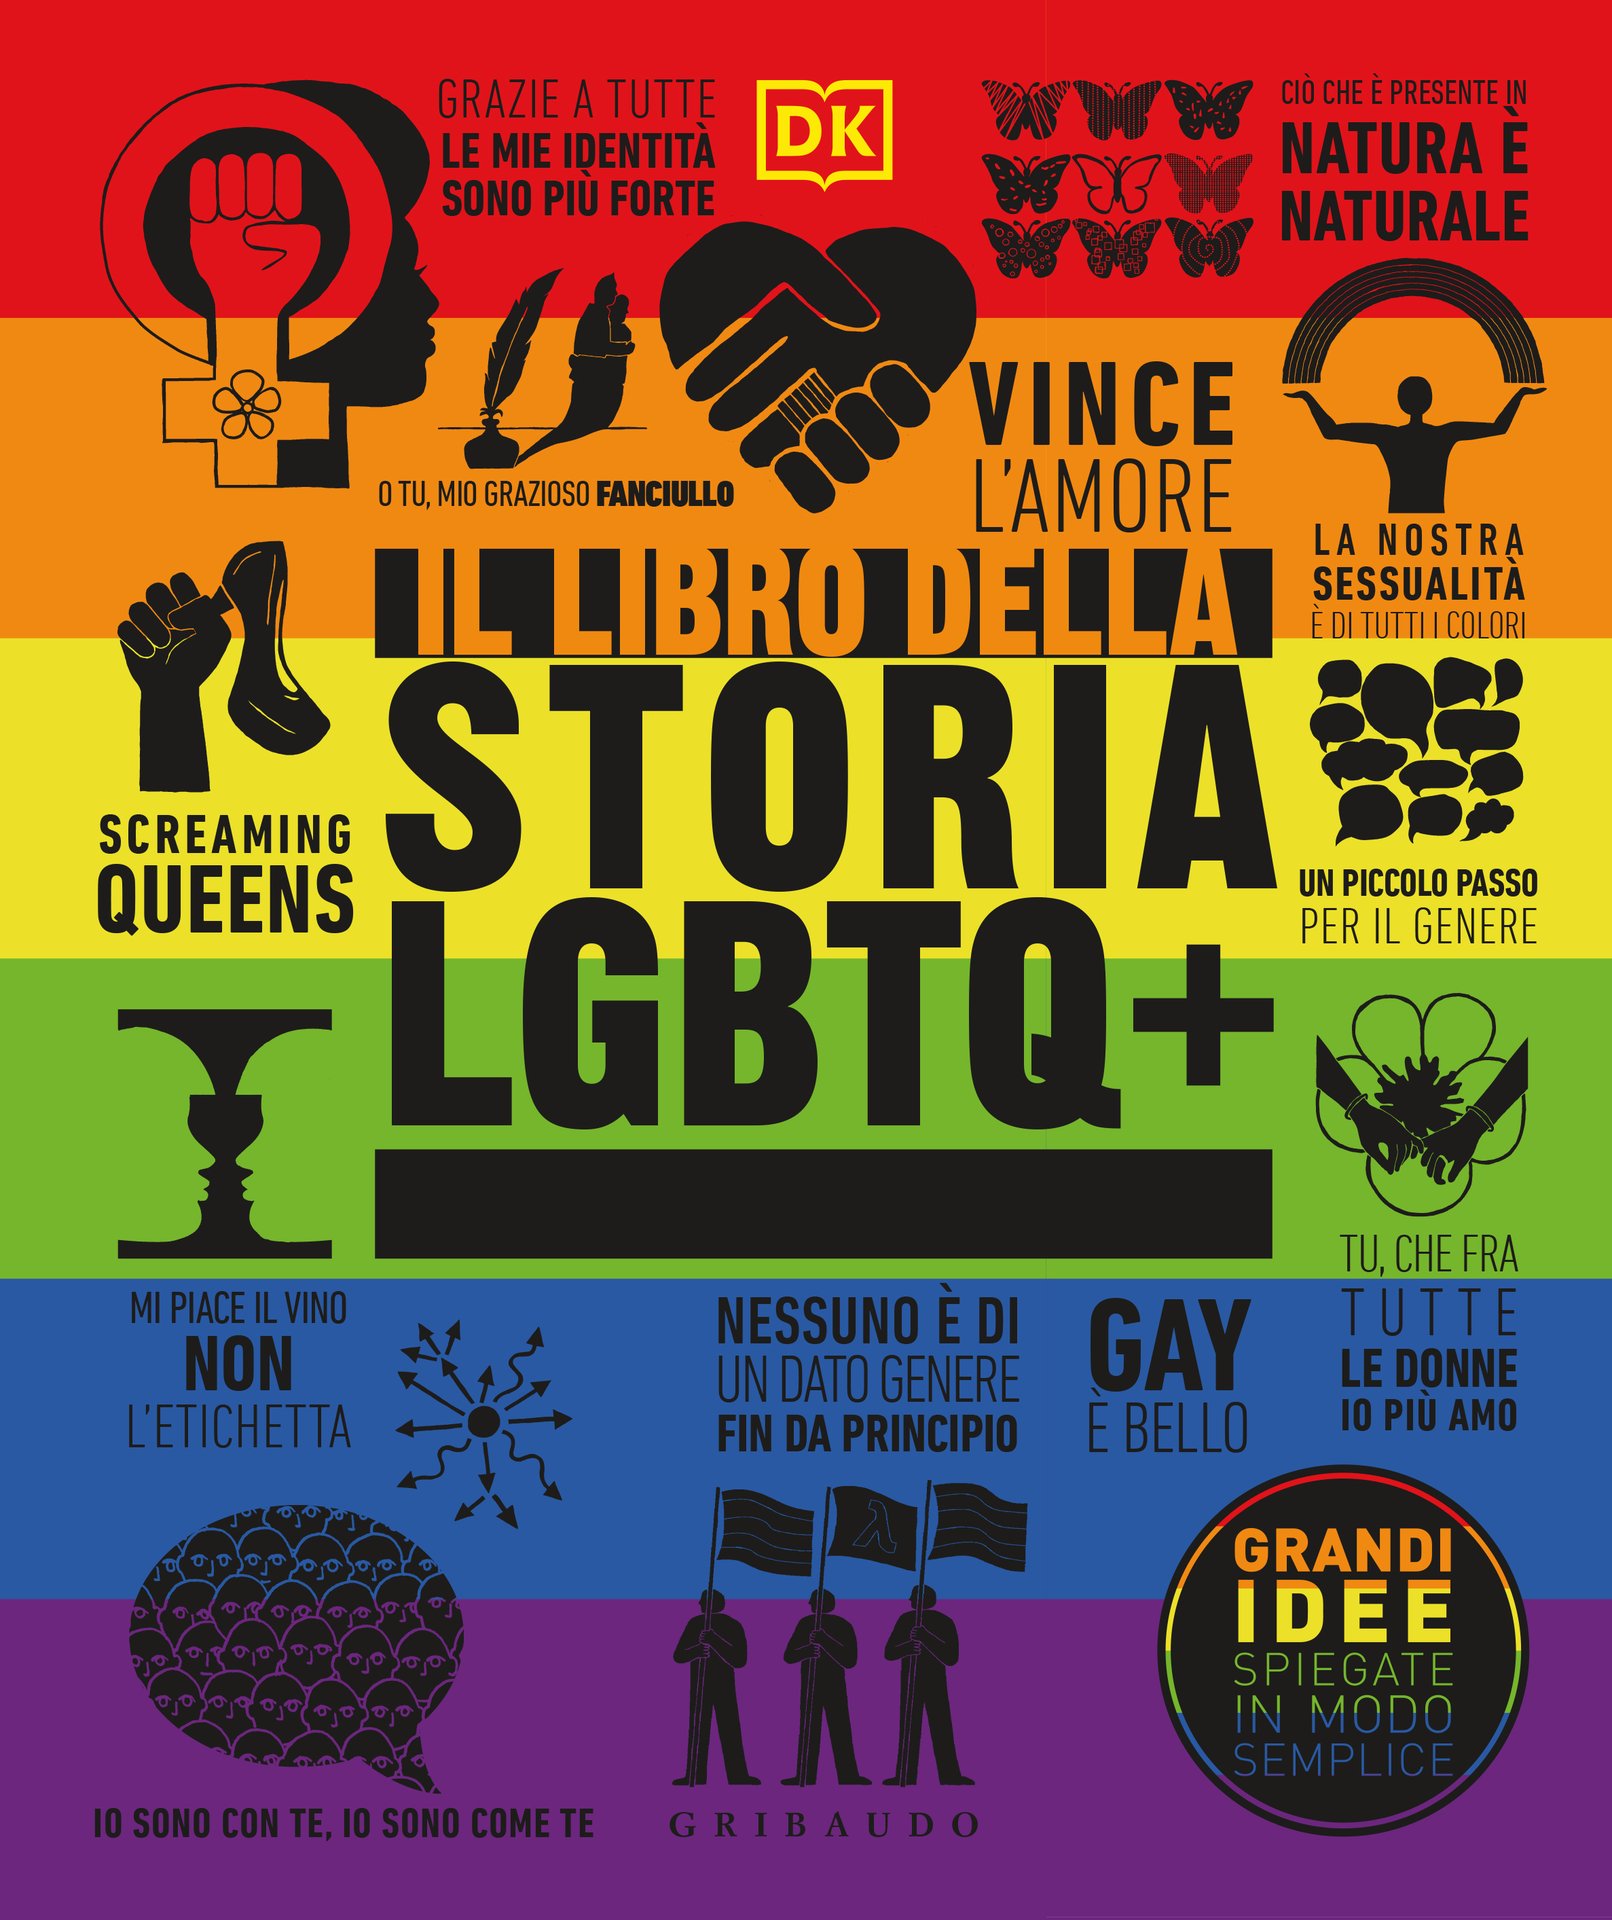 Il libro della storia LGBTQ+